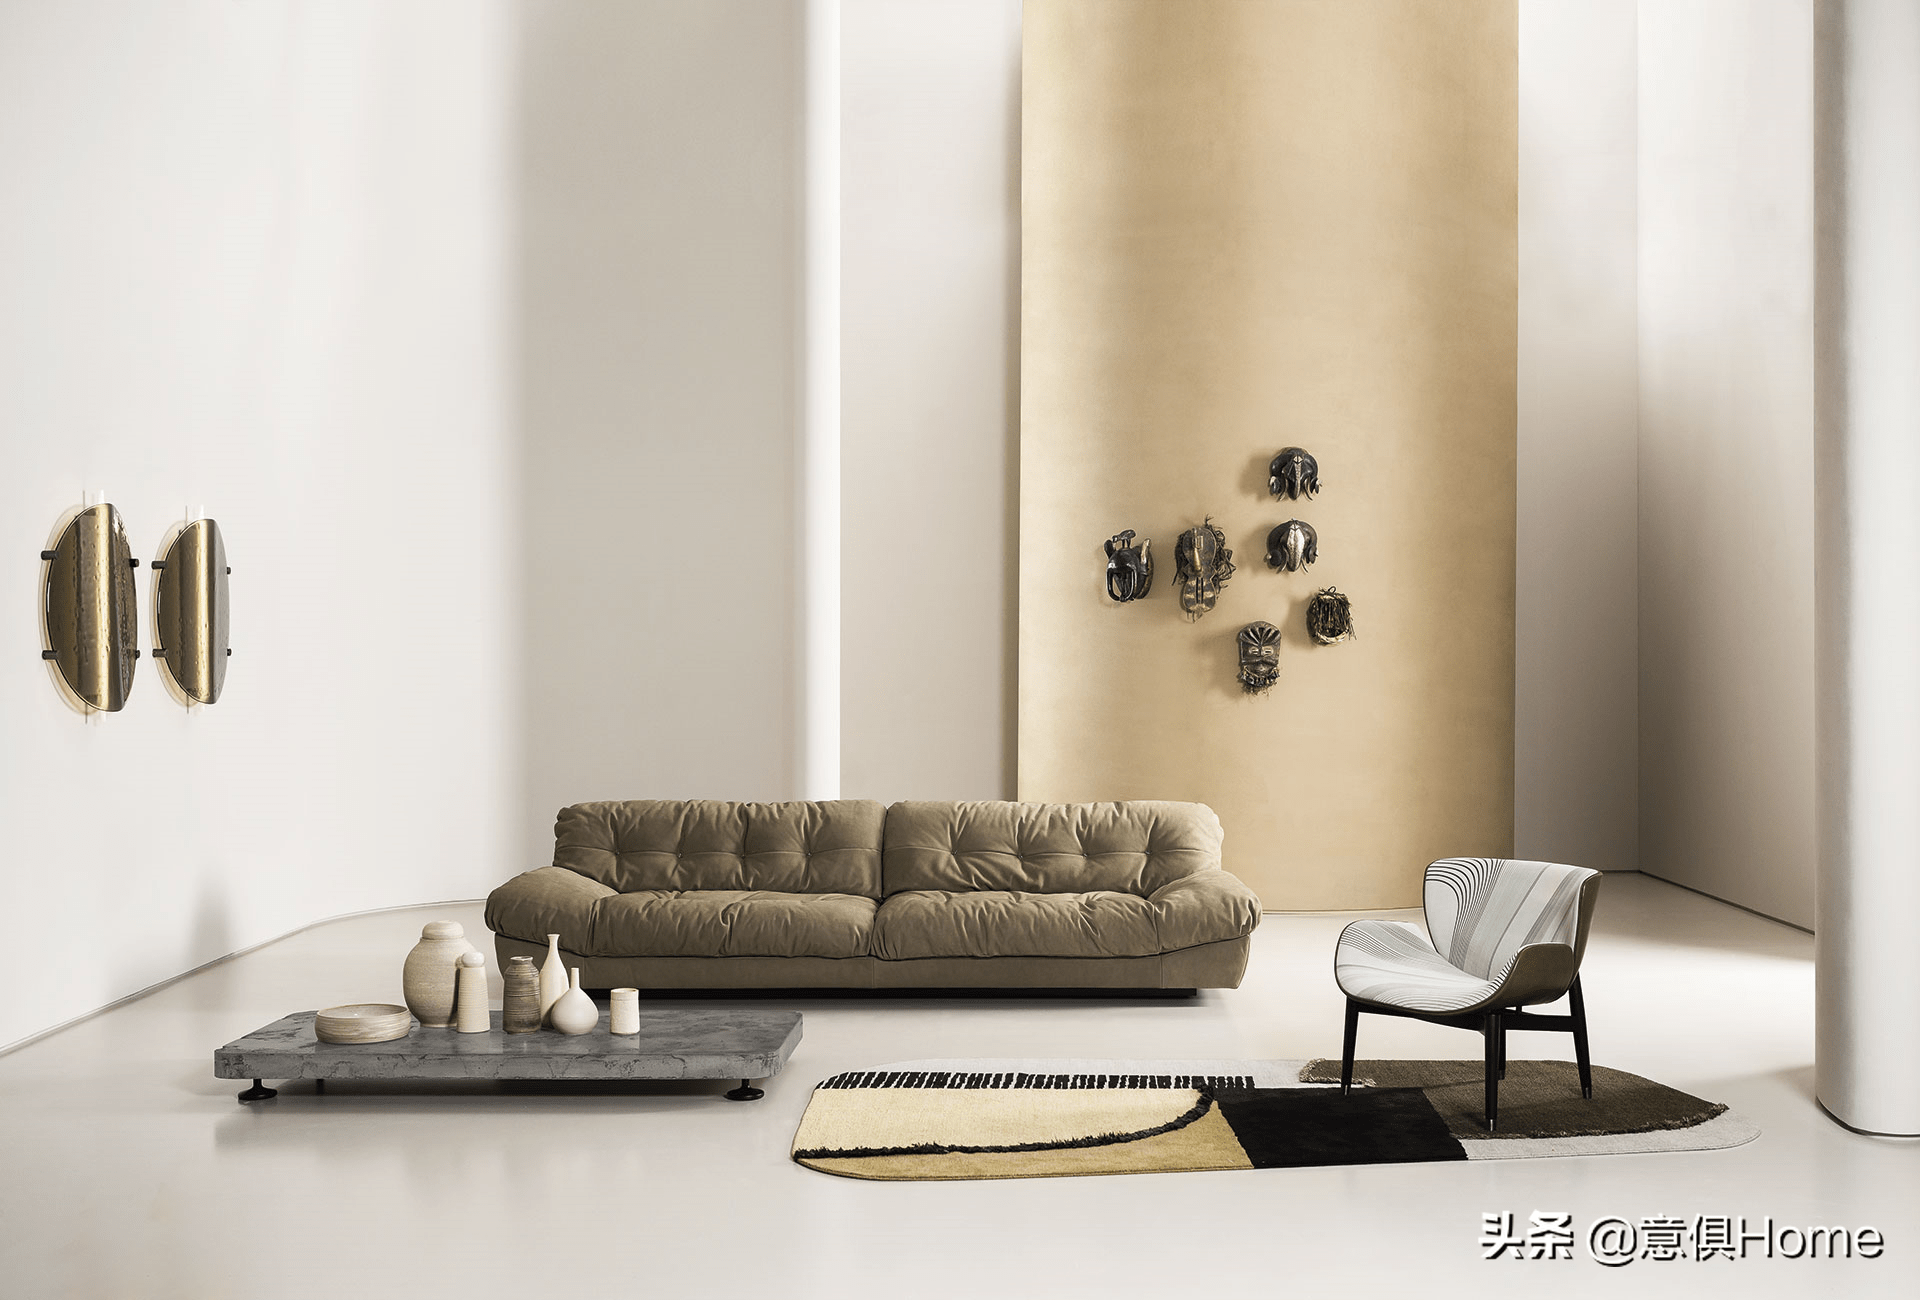 盘点世界顶级家居品牌baxter最畅销的6款沙发